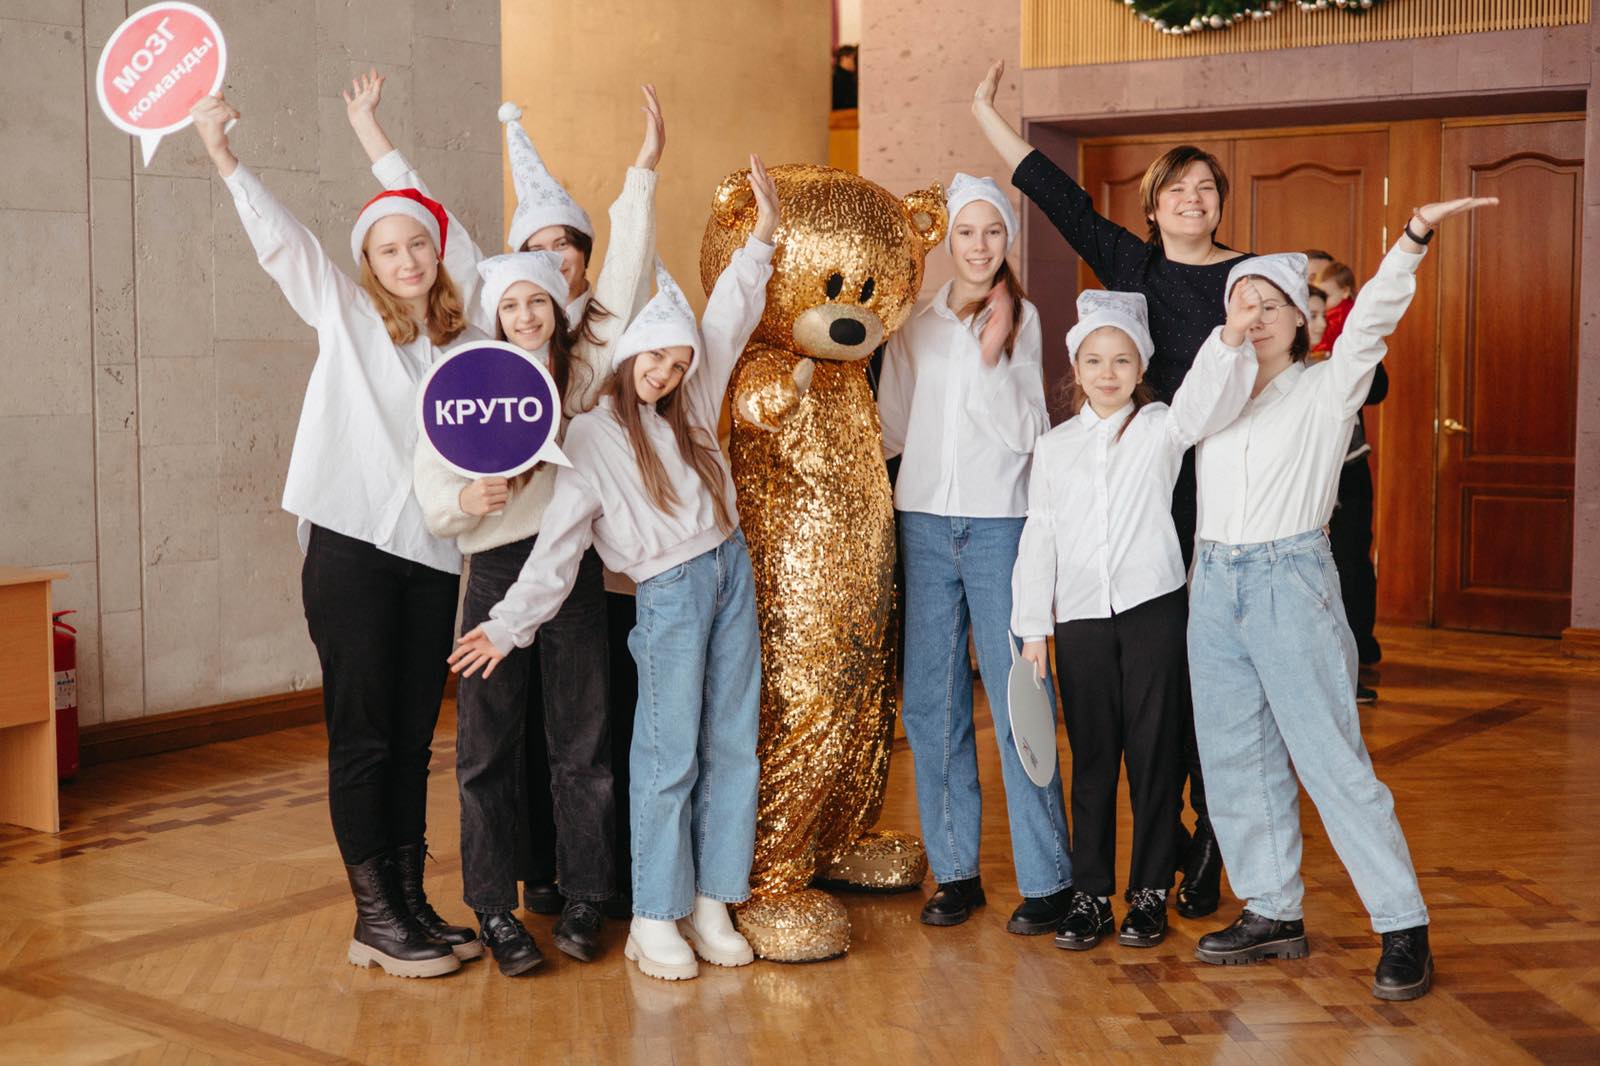 В Бобруйске состоялась интеллектуальная игра КВИЗ, посвященная празднику Рождества Христова